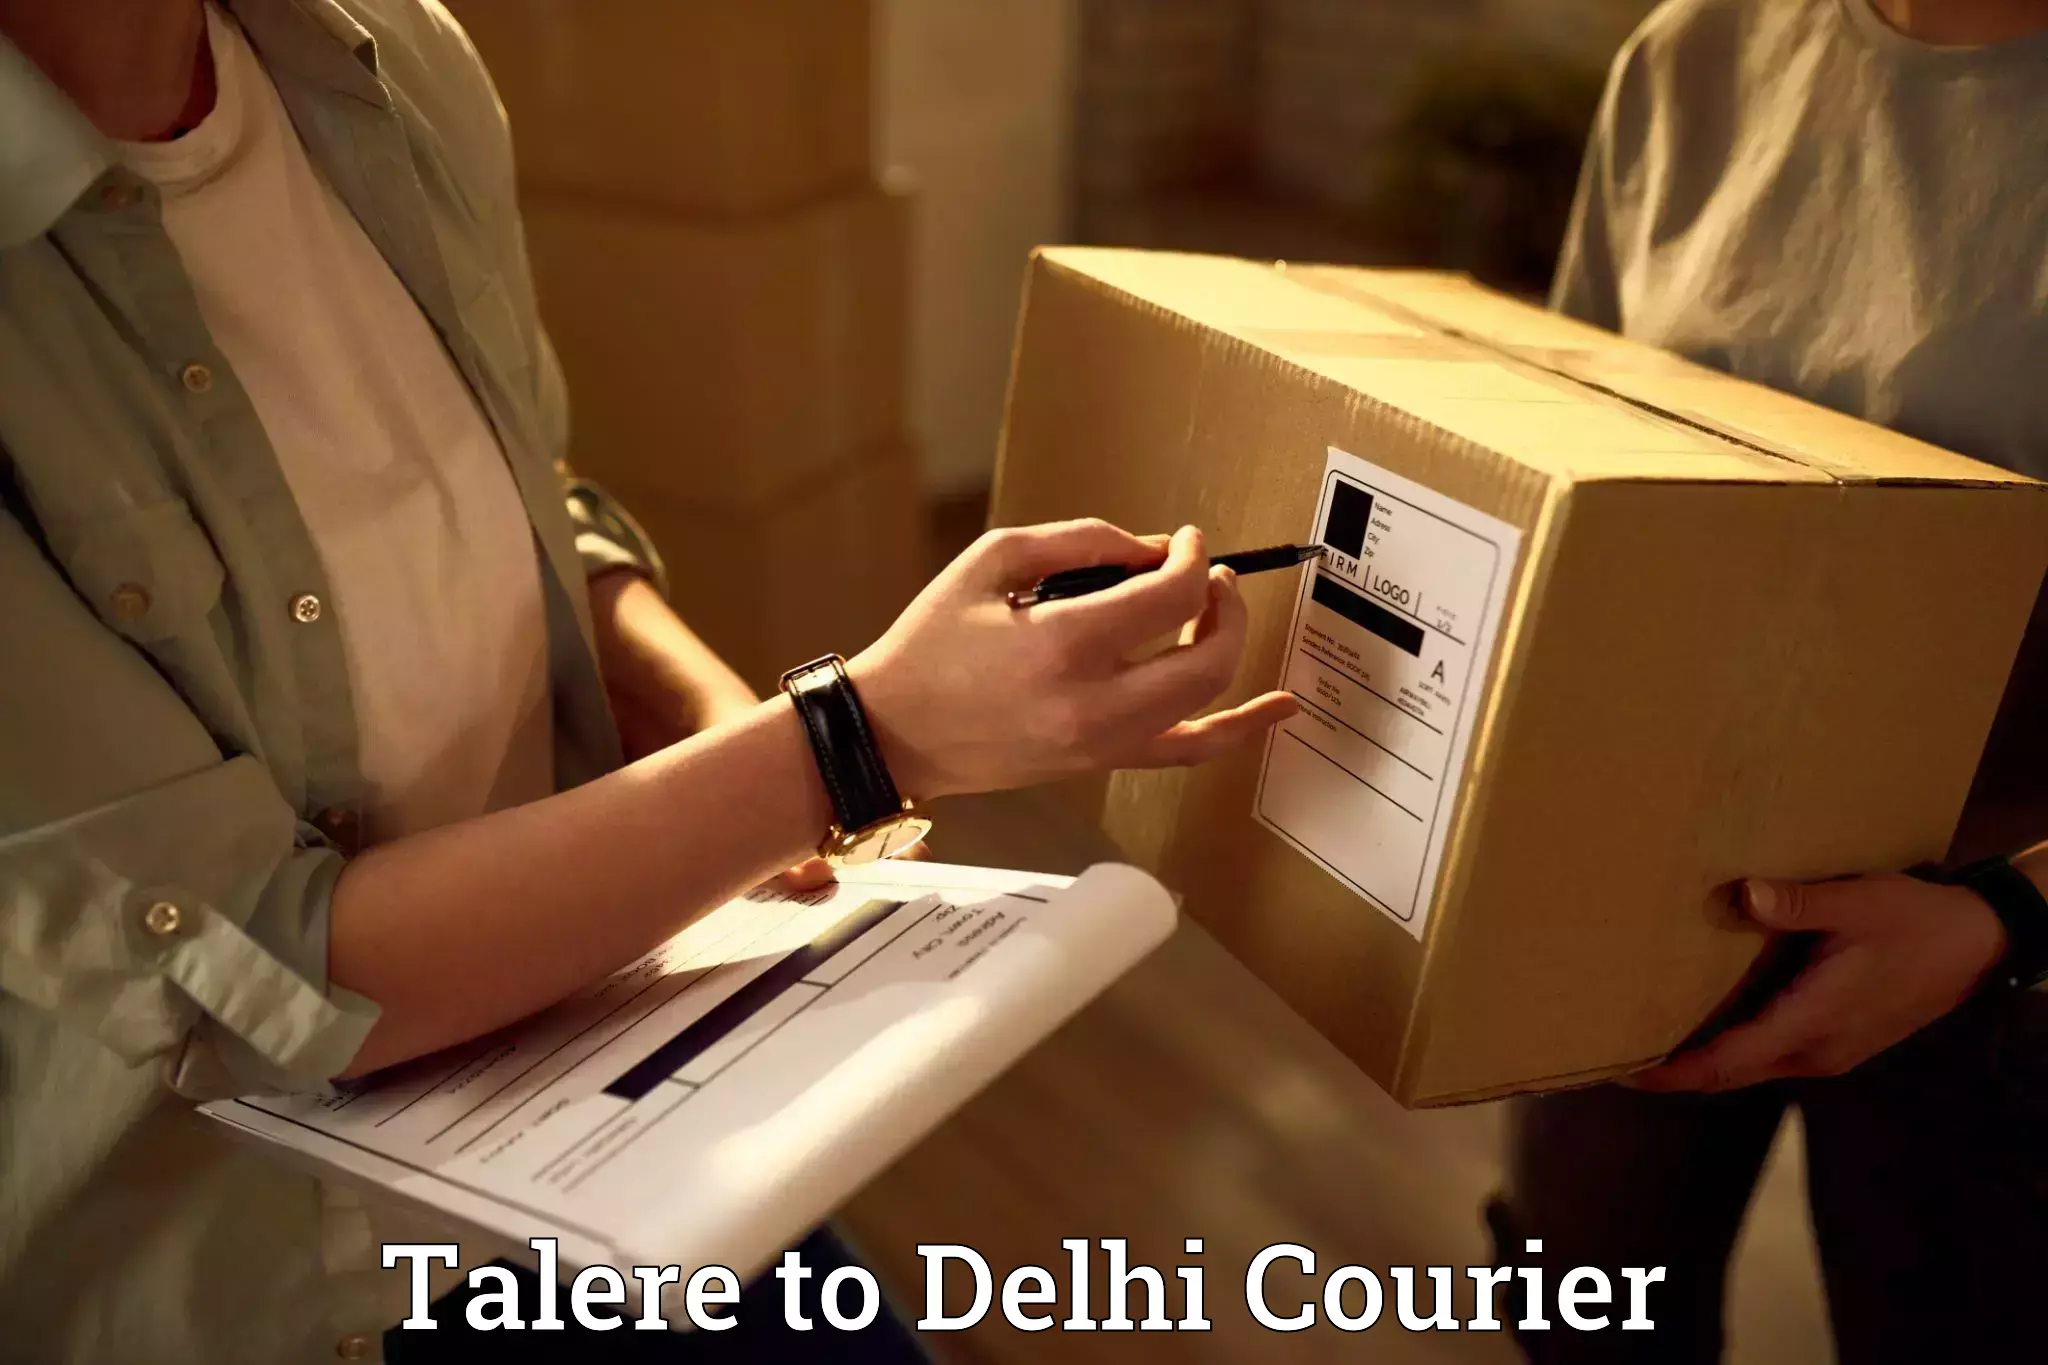 Efficient moving company Talere to Delhi